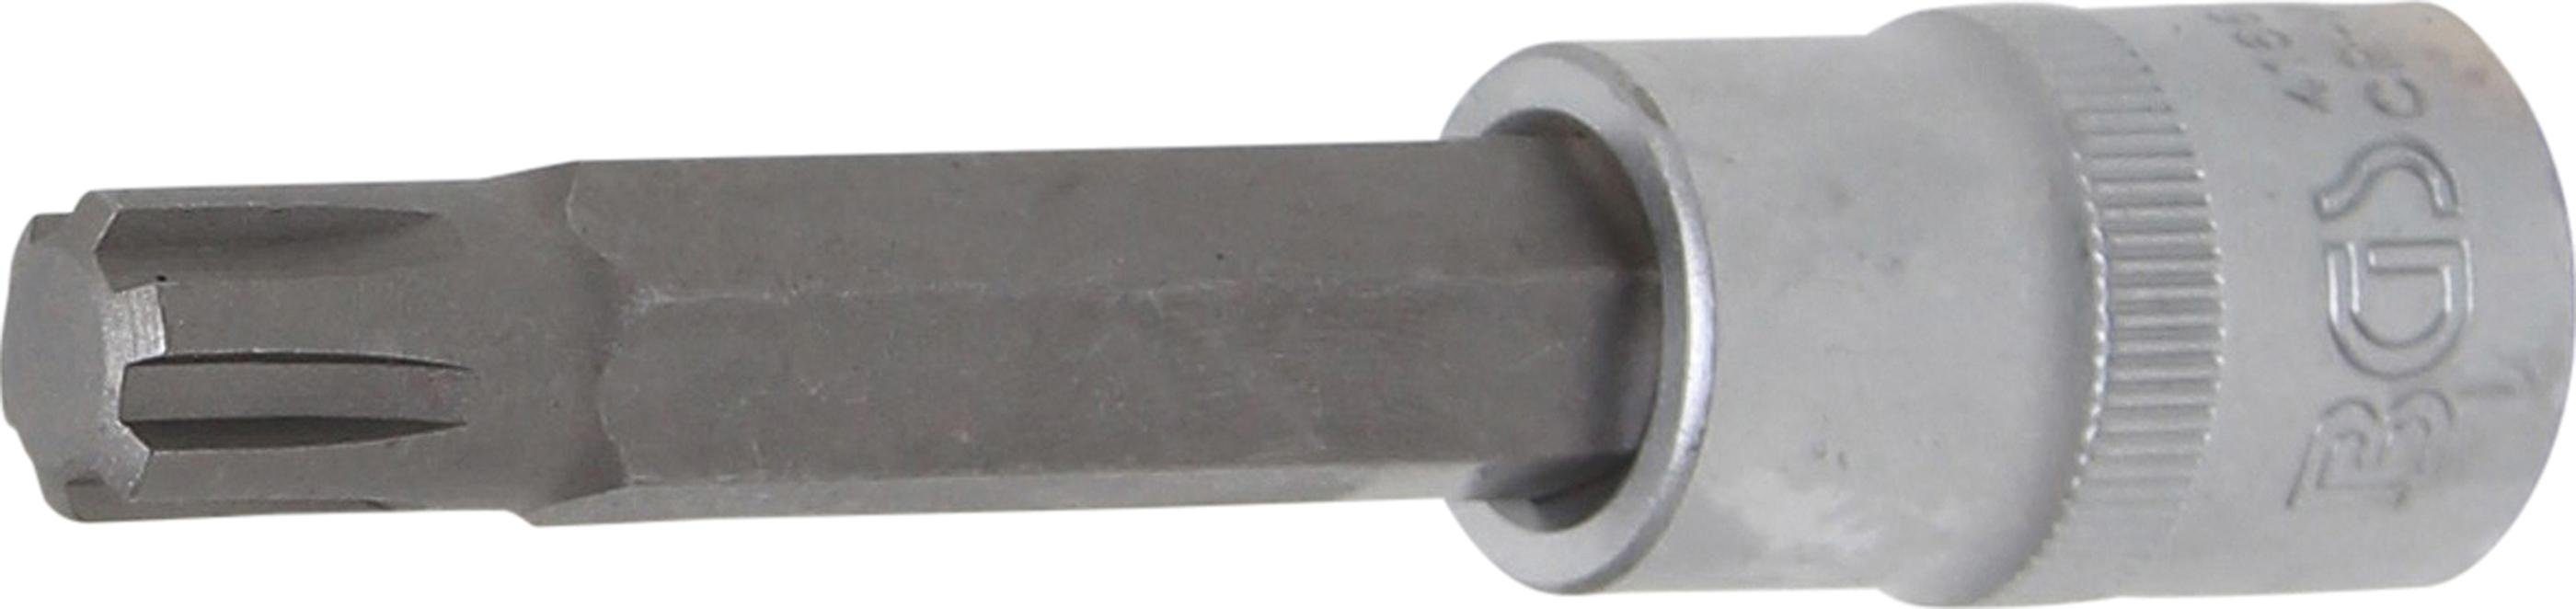 BGS technic Bit-Schraubendreher Bit-Einsatz, Länge 100 mm, Antrieb Innenvierkant 12,5 mm (1/2), Keil-Profil (für RIBE) M12